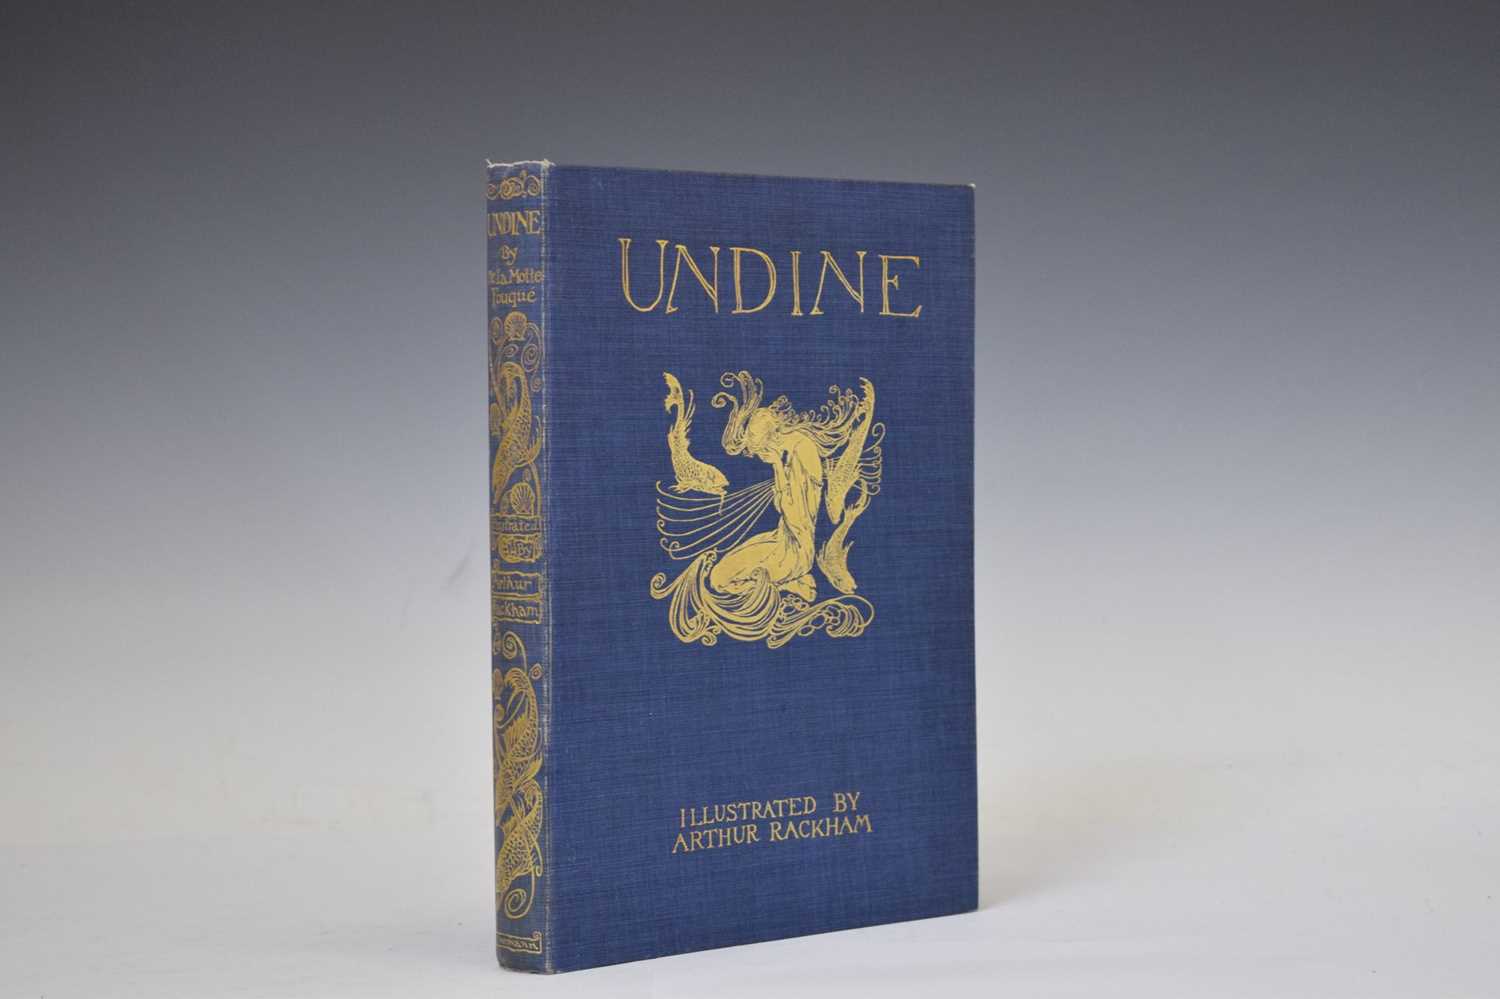 De La Motte Fouqué - 'Undine' - Illustrated by Arthur Rackham, 1909 - Image 2 of 7